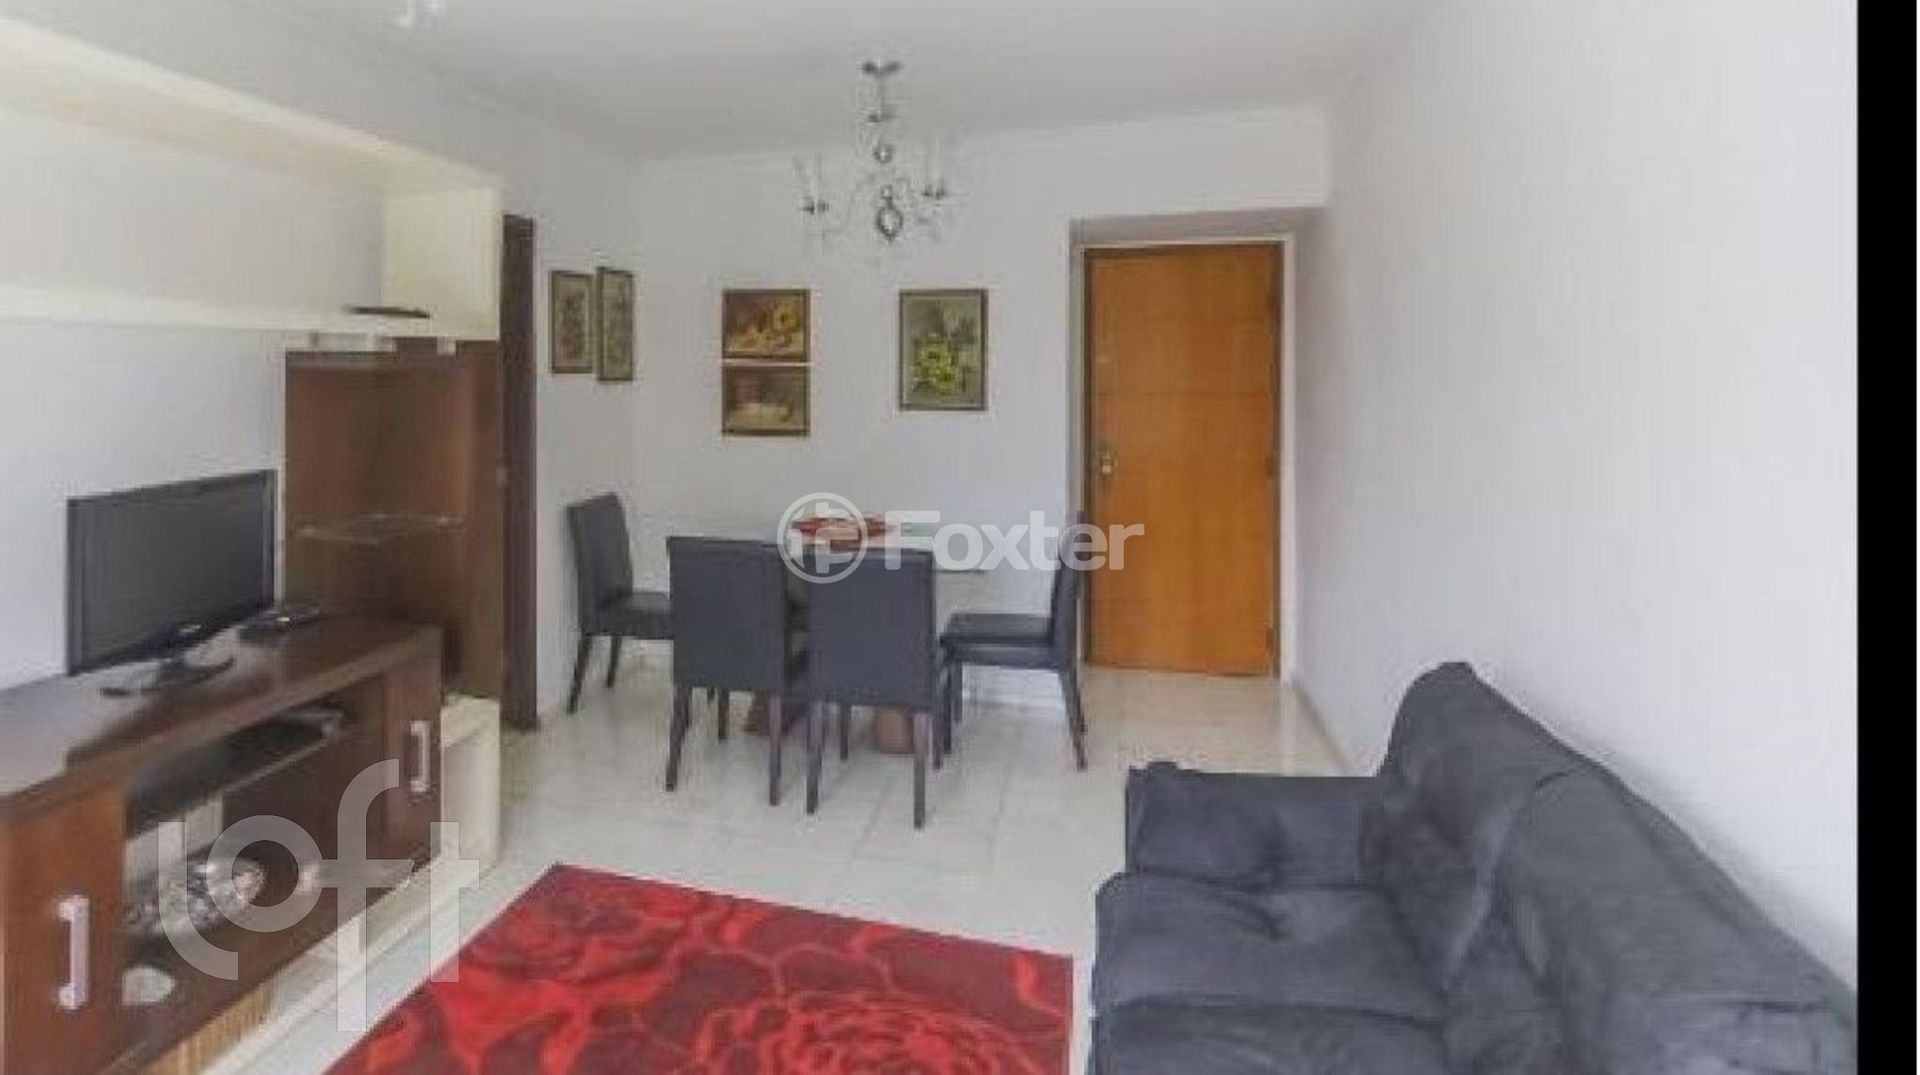 Apartamento 2 dorms à venda Rua Professor Vahia de Abreu, Vila Olímpia - São Paulo